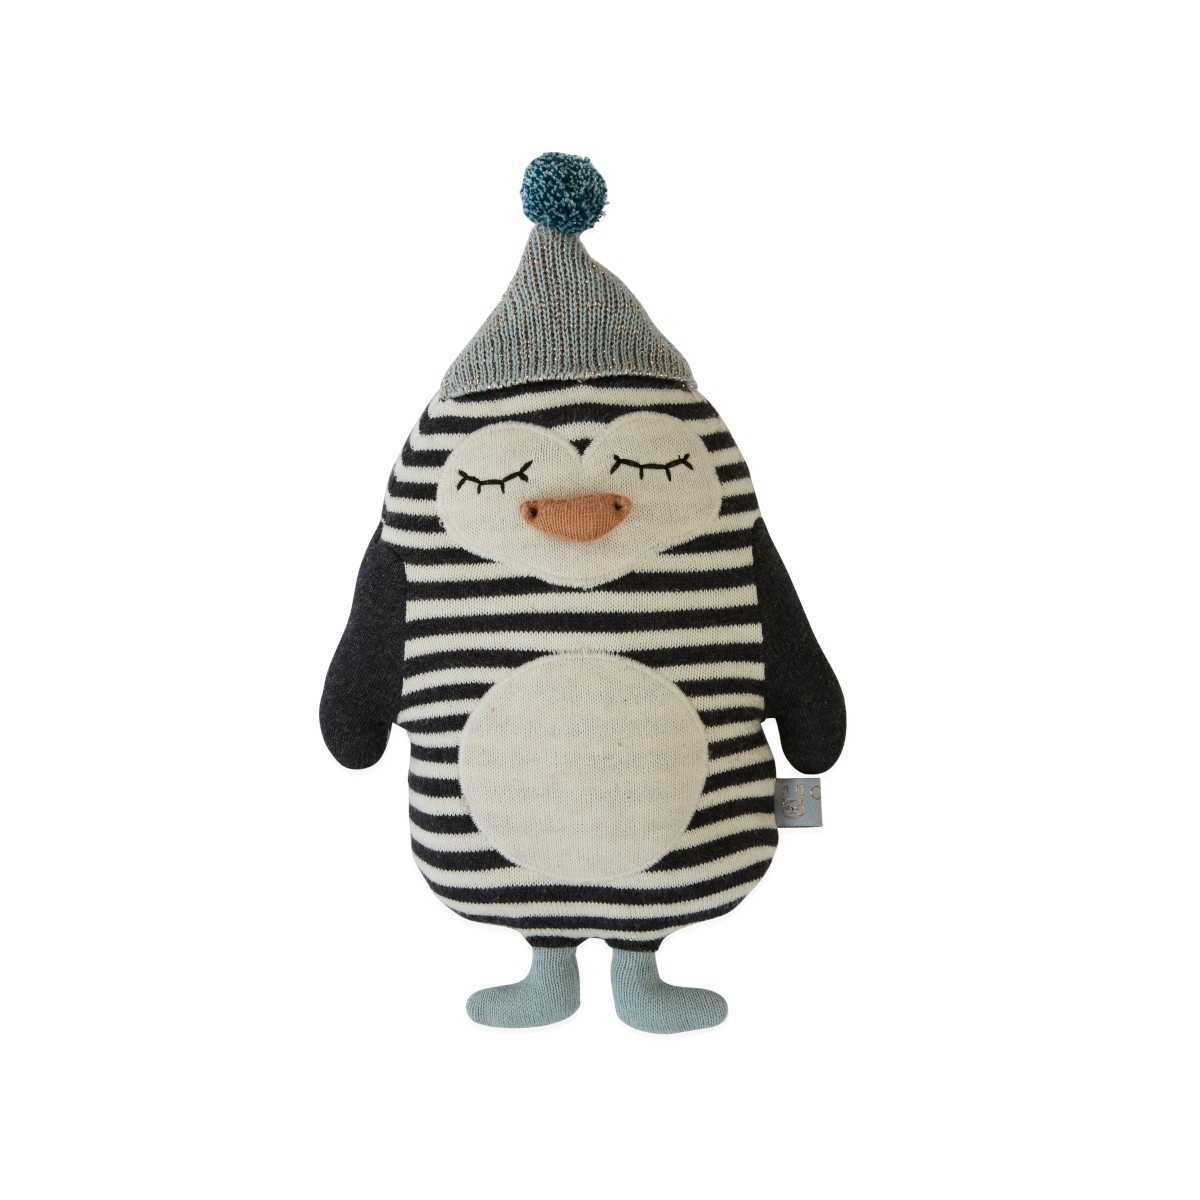 OYOY Cushion Penguin Bob Toy 1100837 